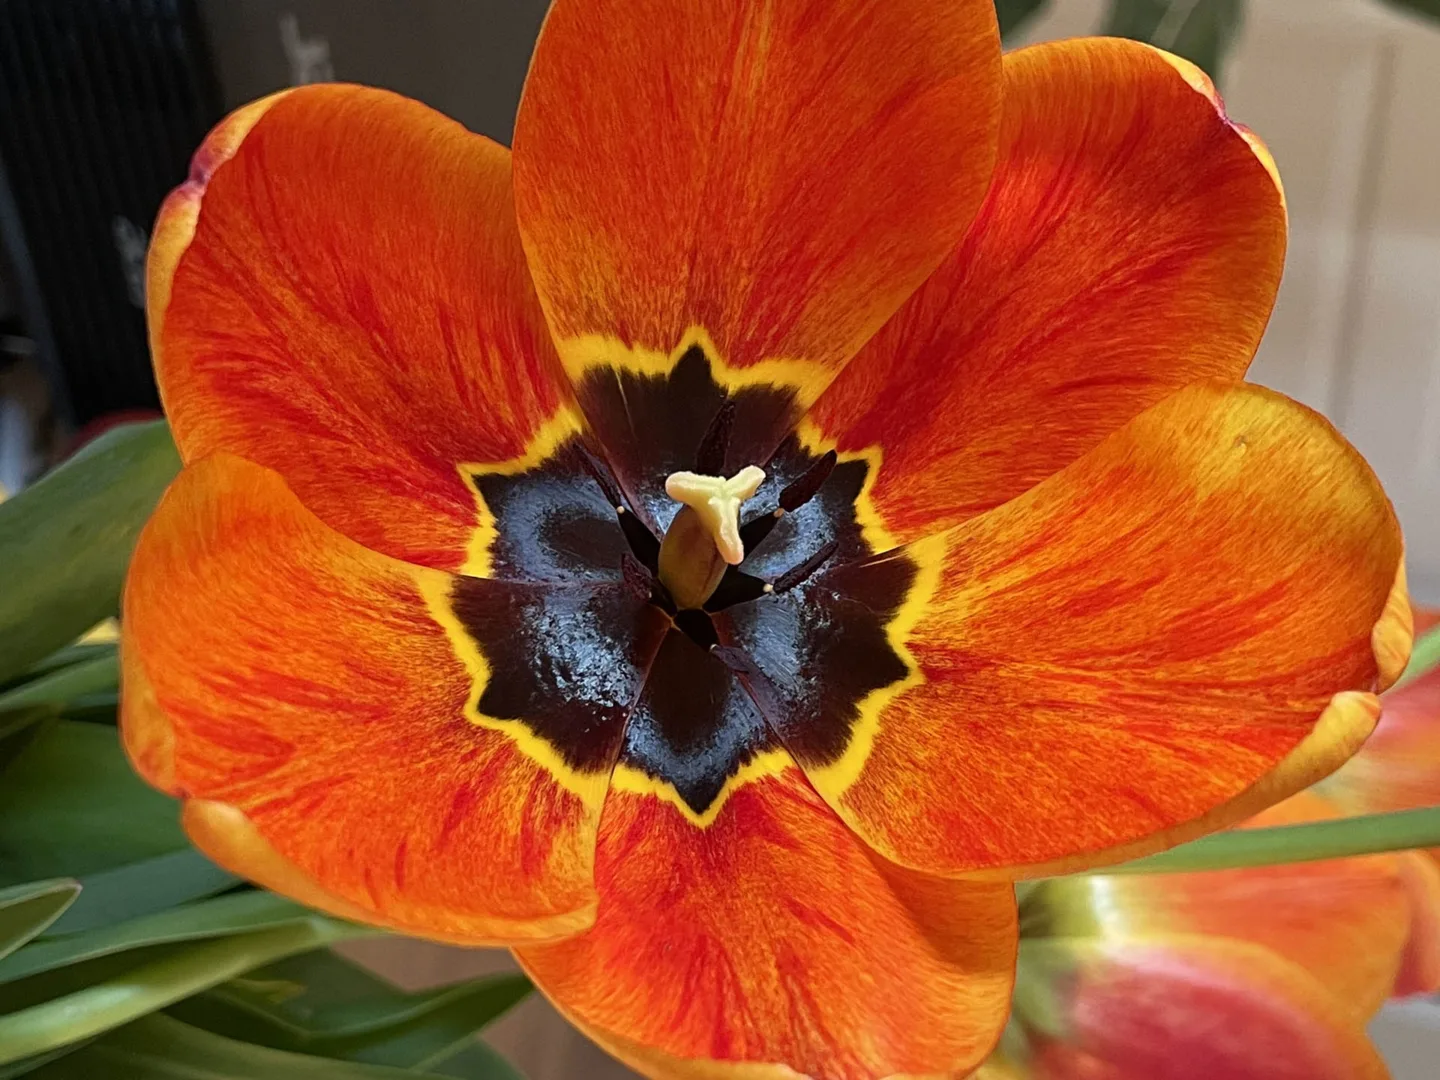 Ile kosztują tulipany z okazji Dnia Kobiet 8.03?